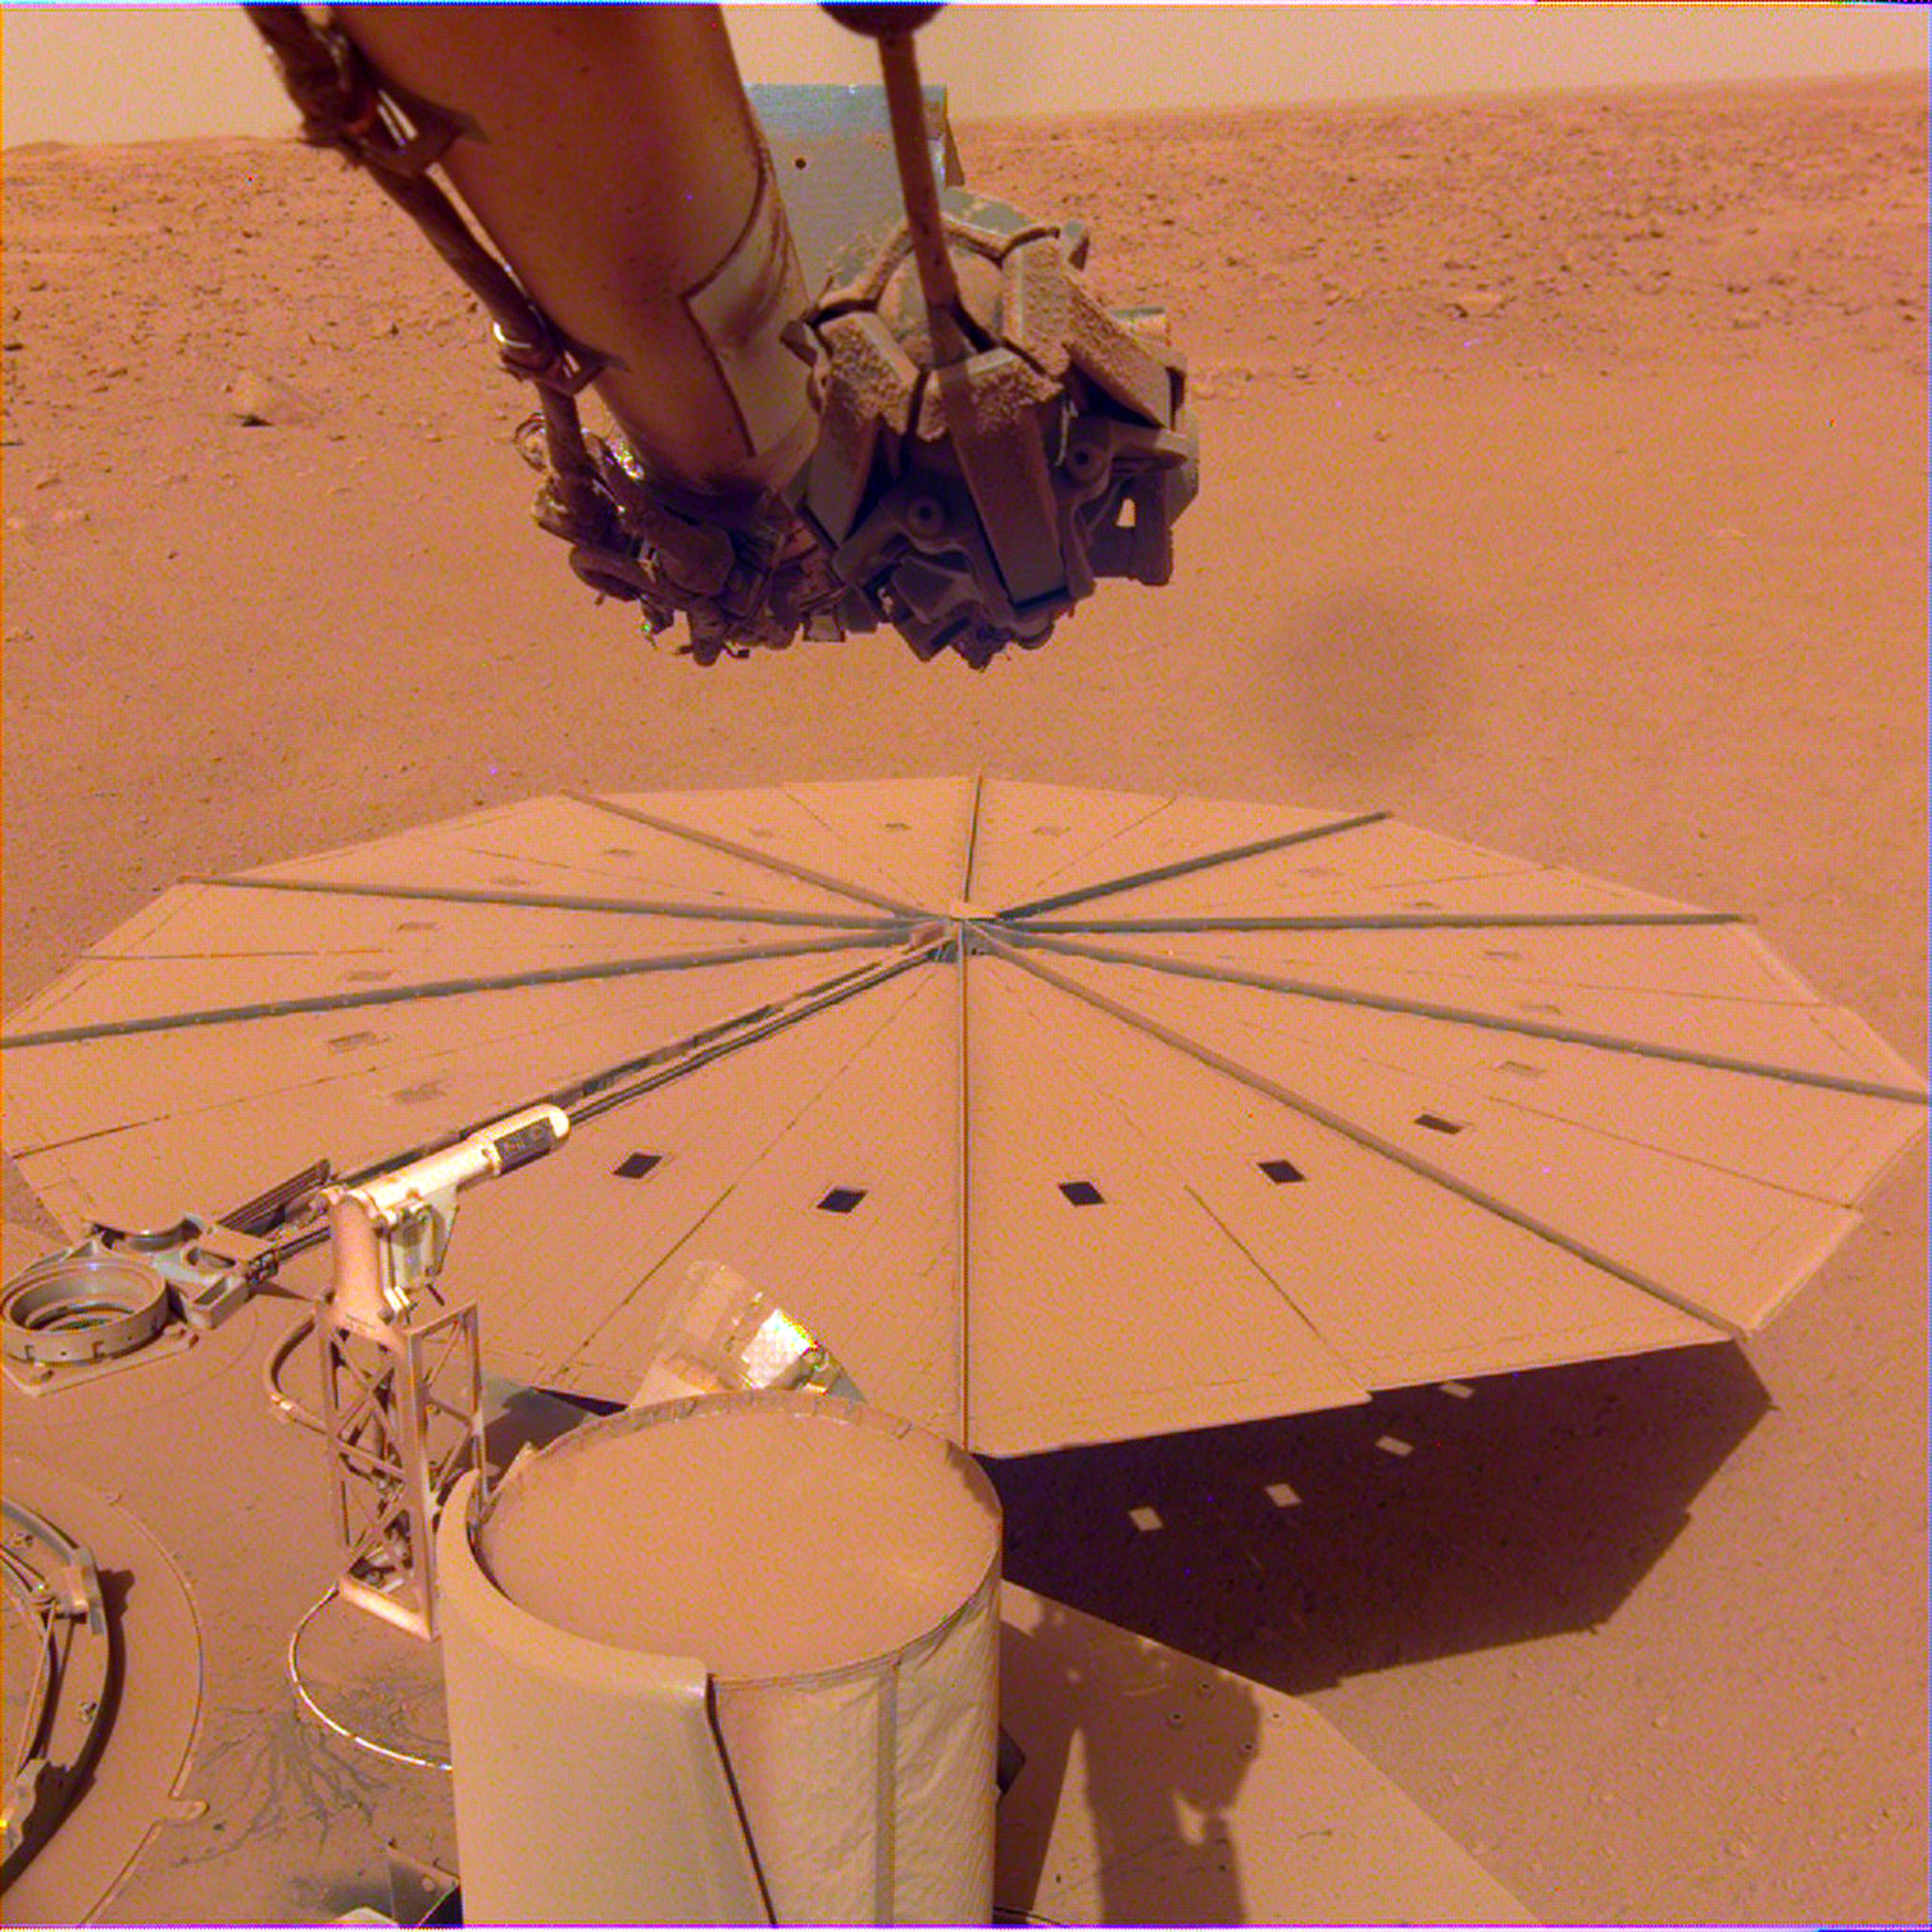 La sonda InSight cubierta de polvo en Marte.